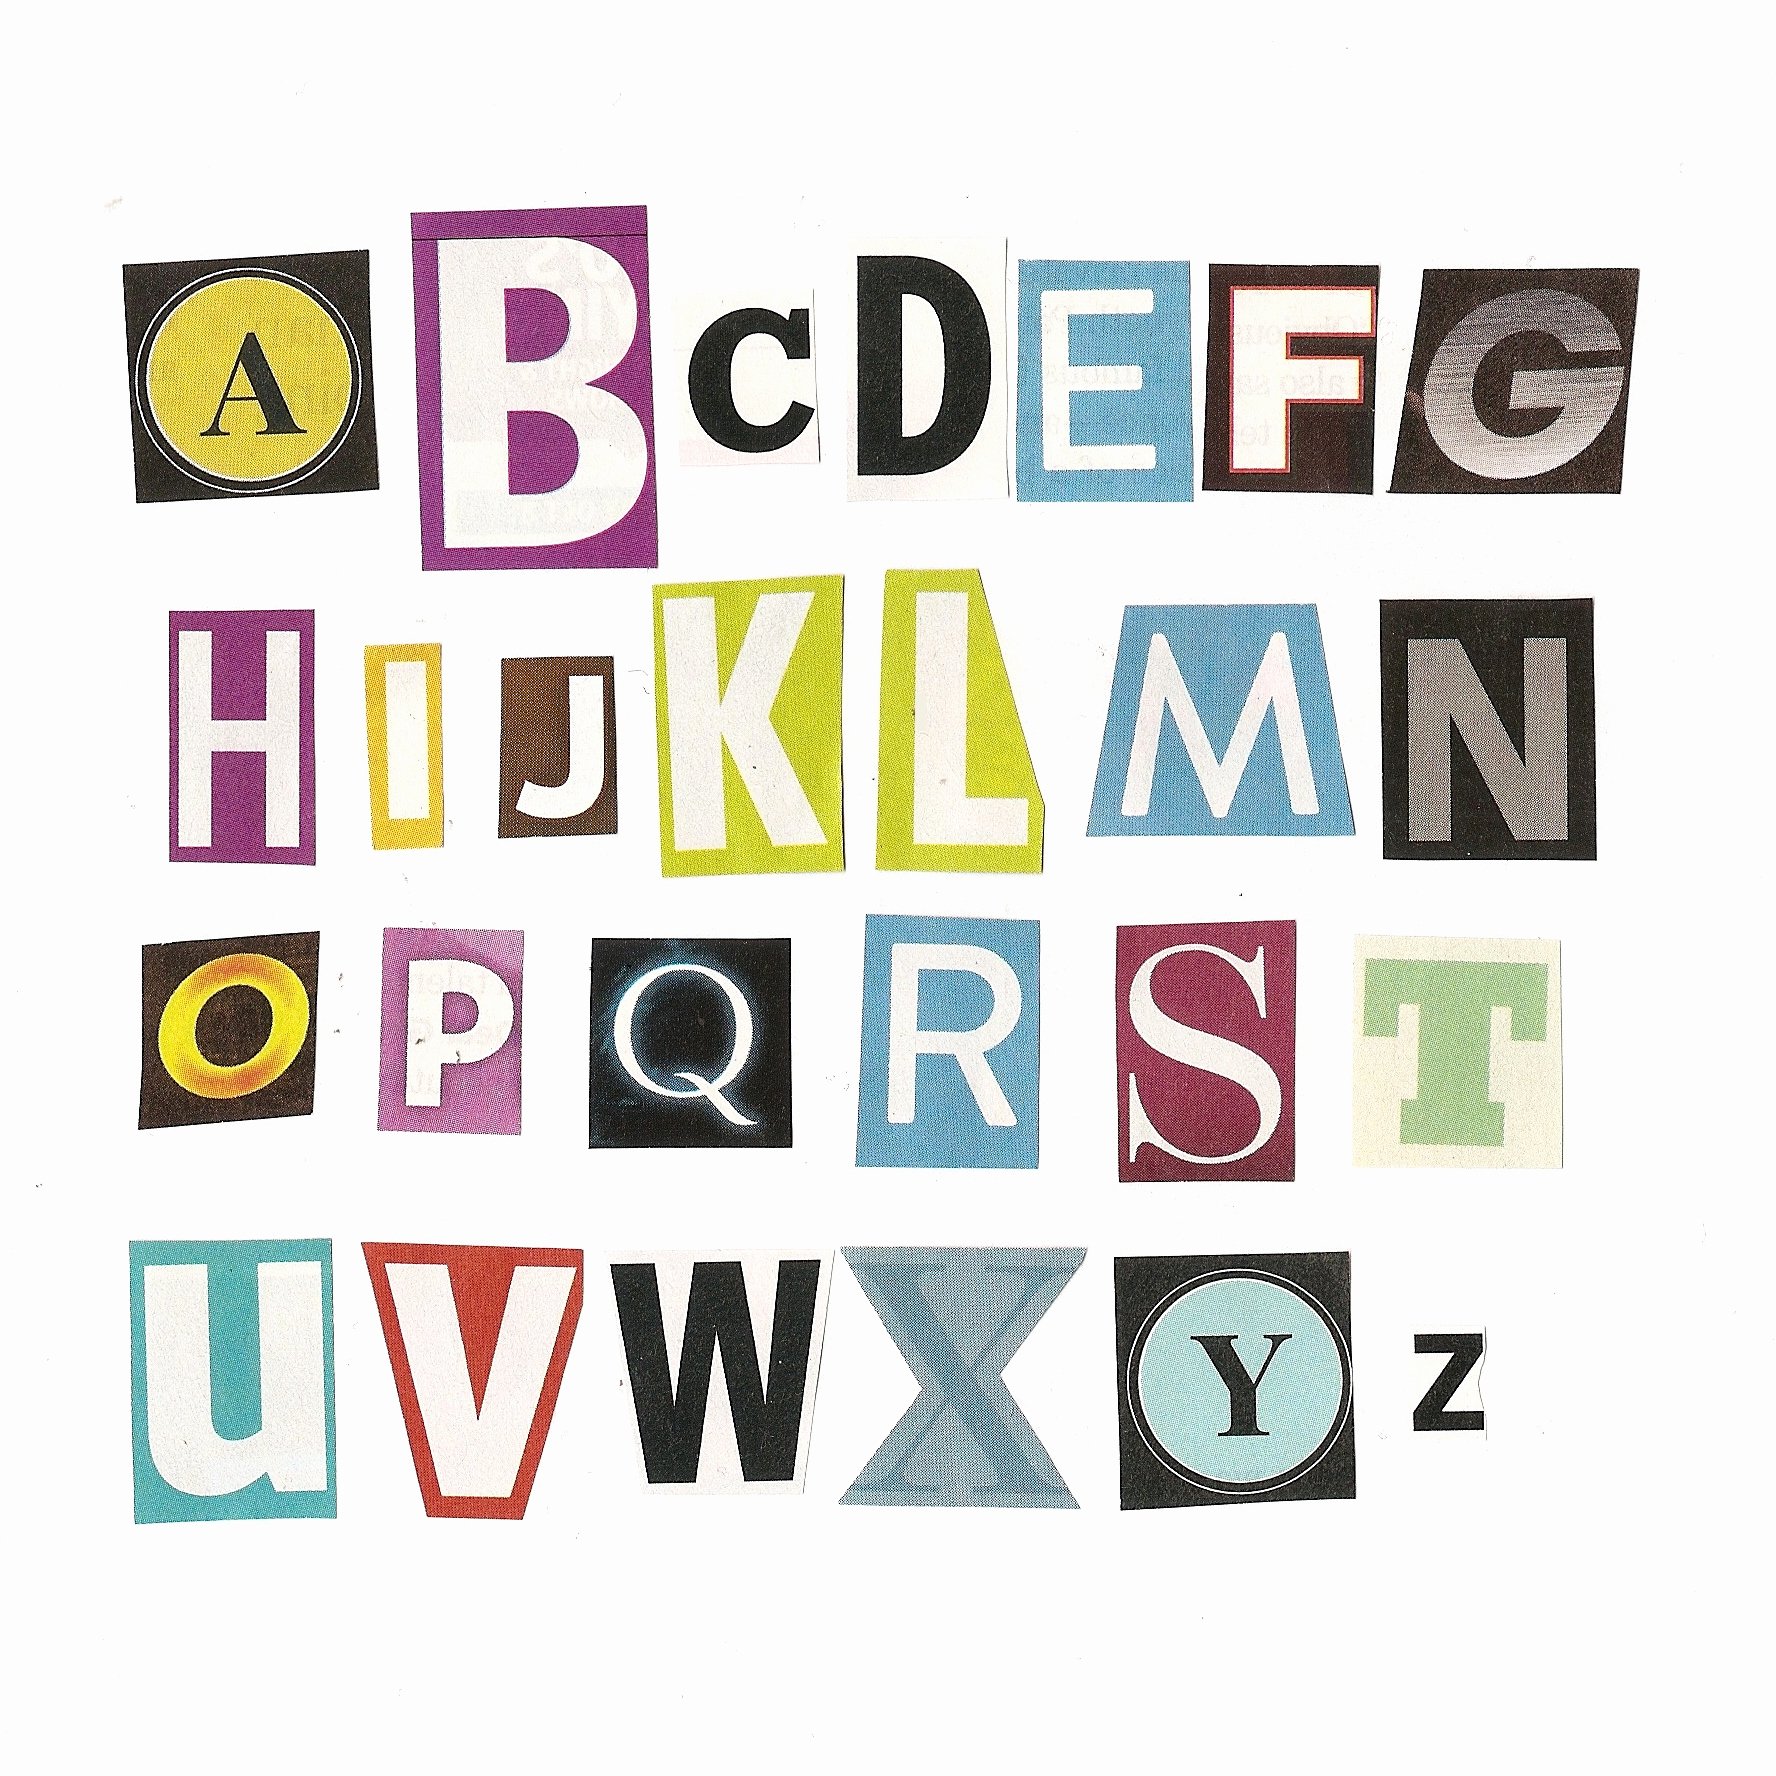 Alphabet Cut Out Letters Unique Magazine Letters Cut Out Quotes Quotesgram